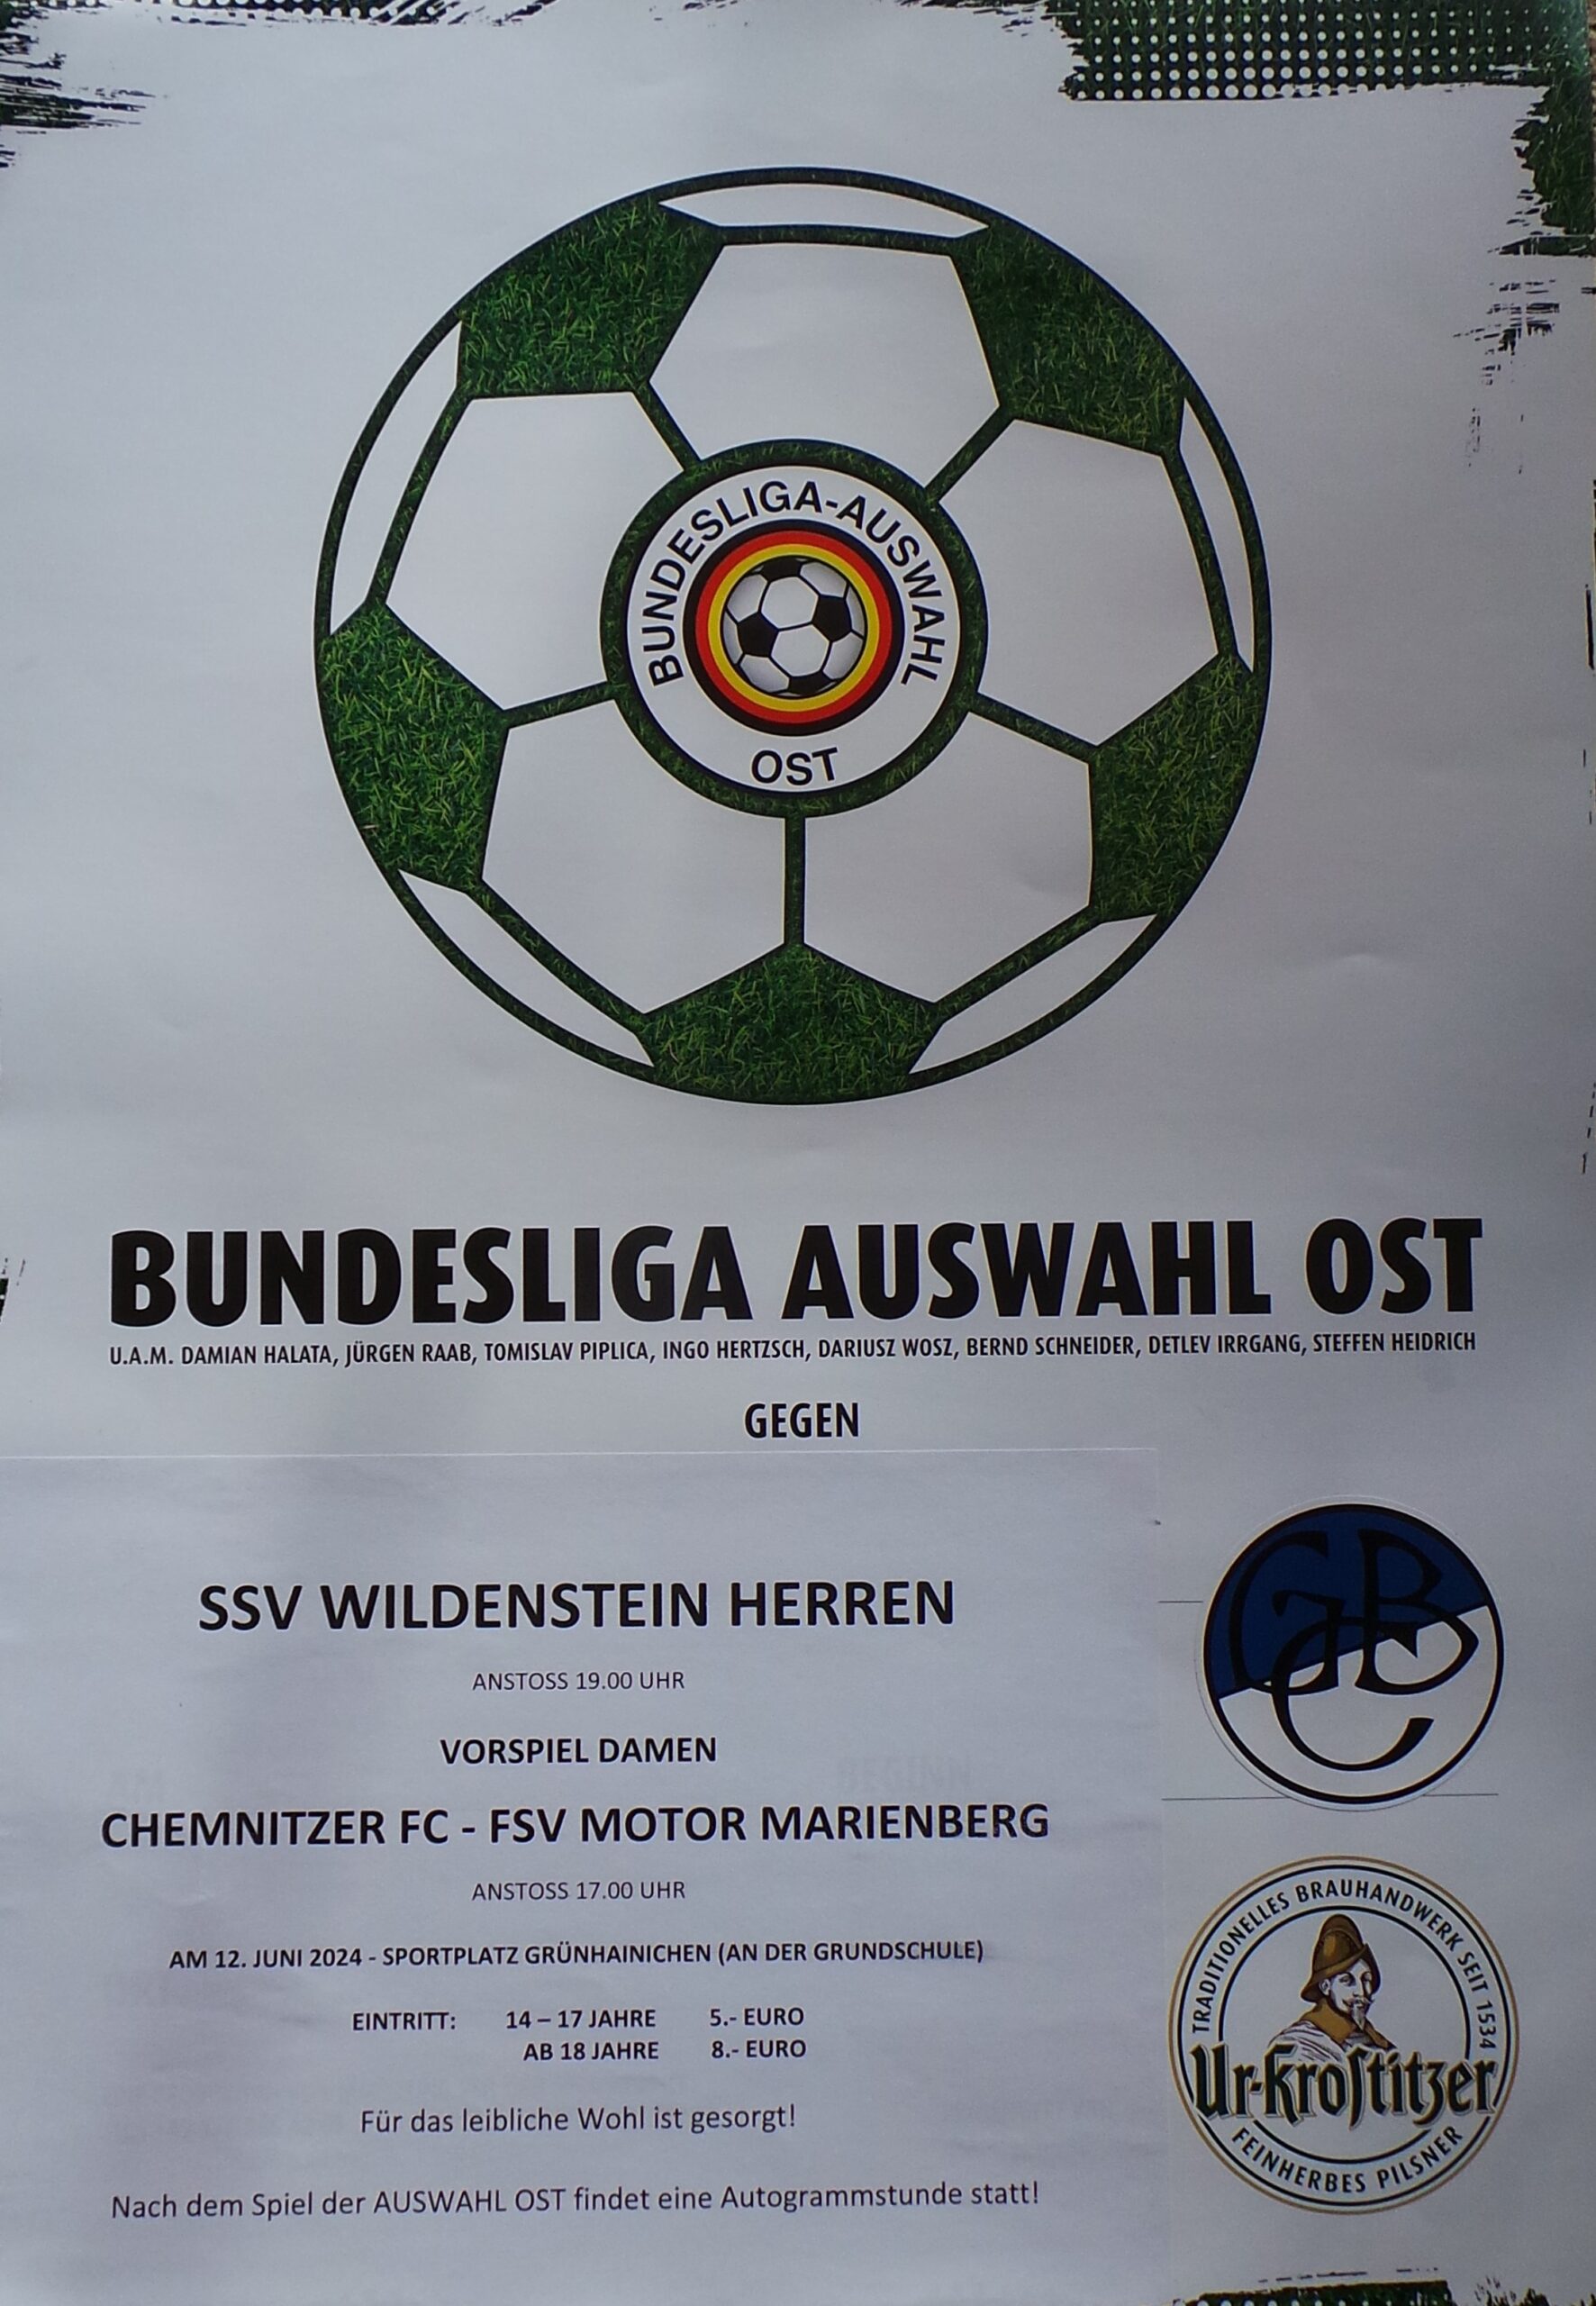 HEIMATFEST - Großes Fußballspiel mit den "OSTLEGENDEN", im Vorspiel CFC Damenmannschaft in Grünhainichen am 12.06.2024